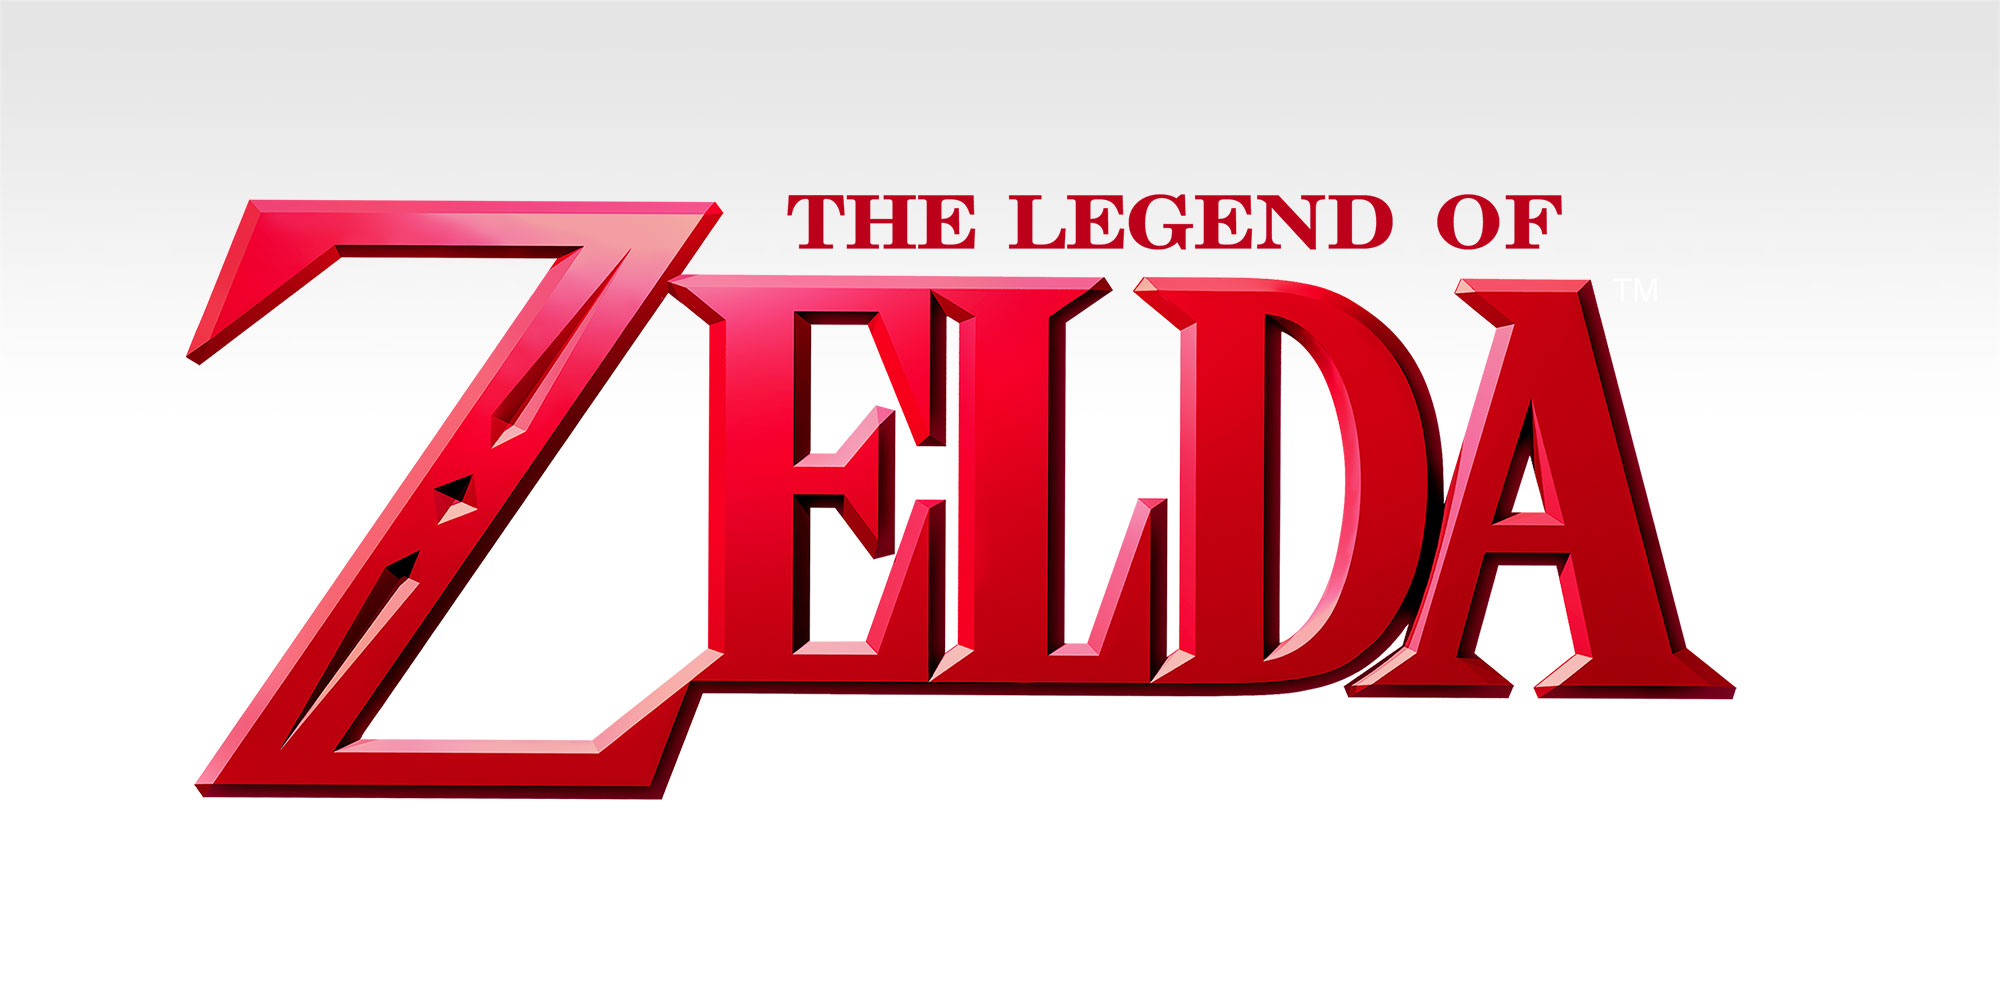 Wirf einen Blick hinter die Kulissen mit Konzeptzeichnungen von „The Legend of Zelda“